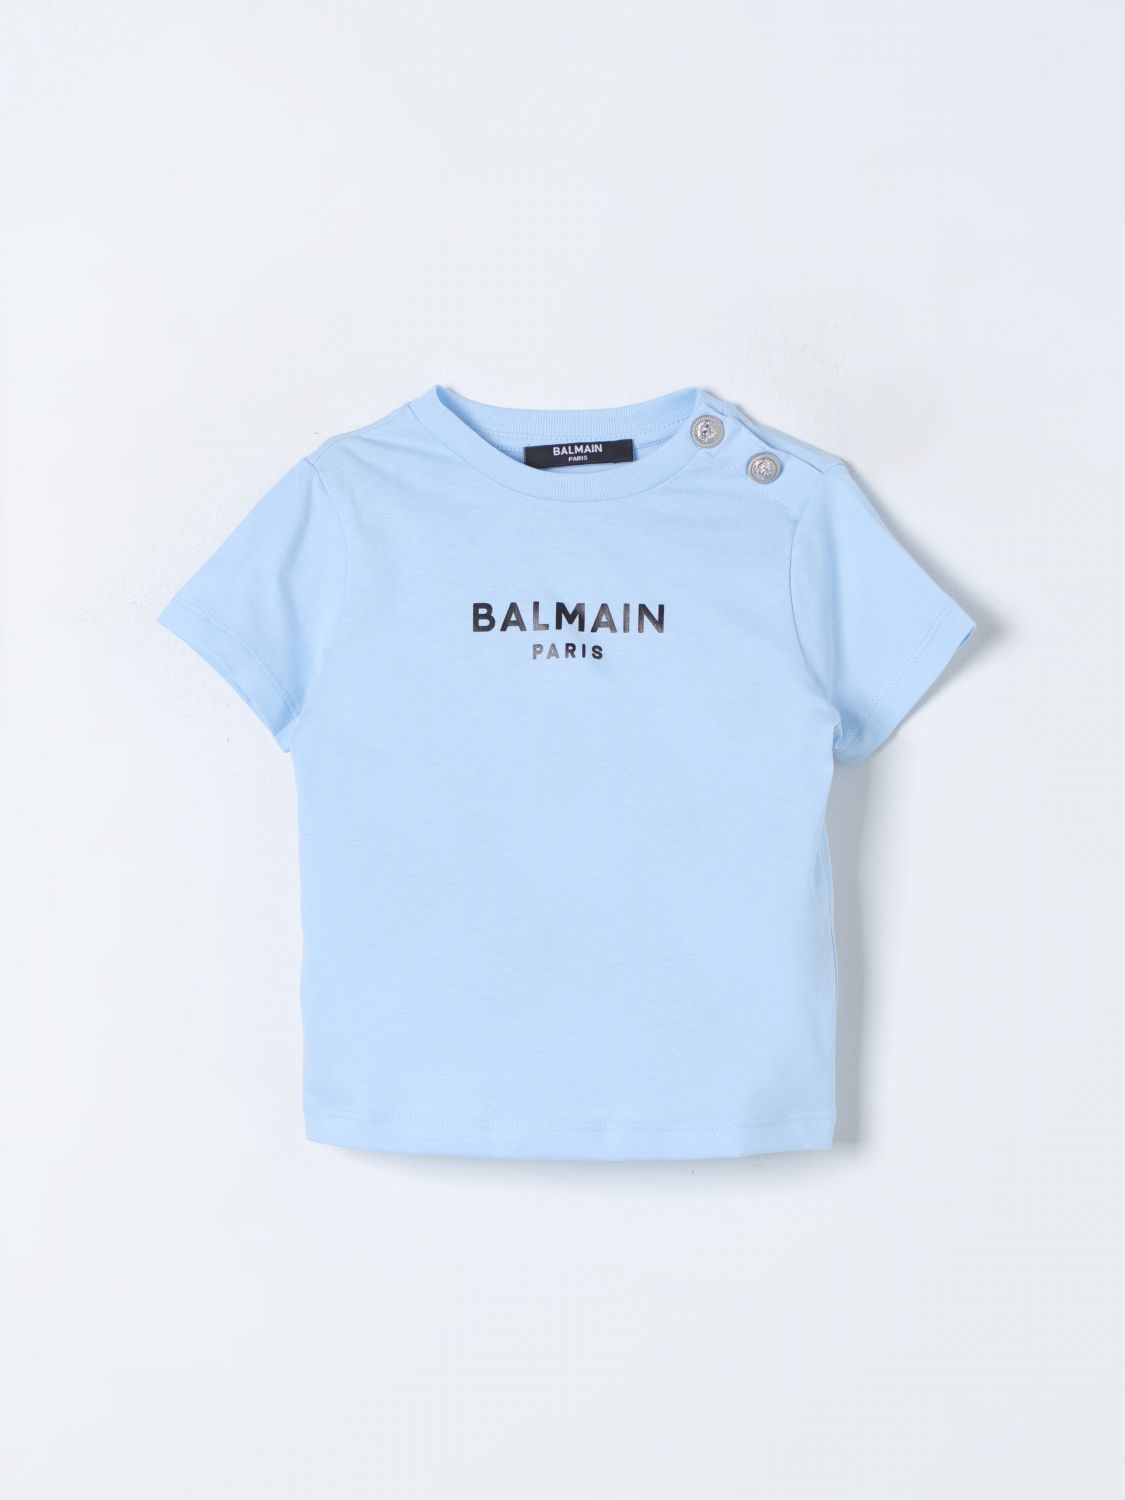 Balmain Babies' T-shirt  Kids Kids Colour Gnawed Blue